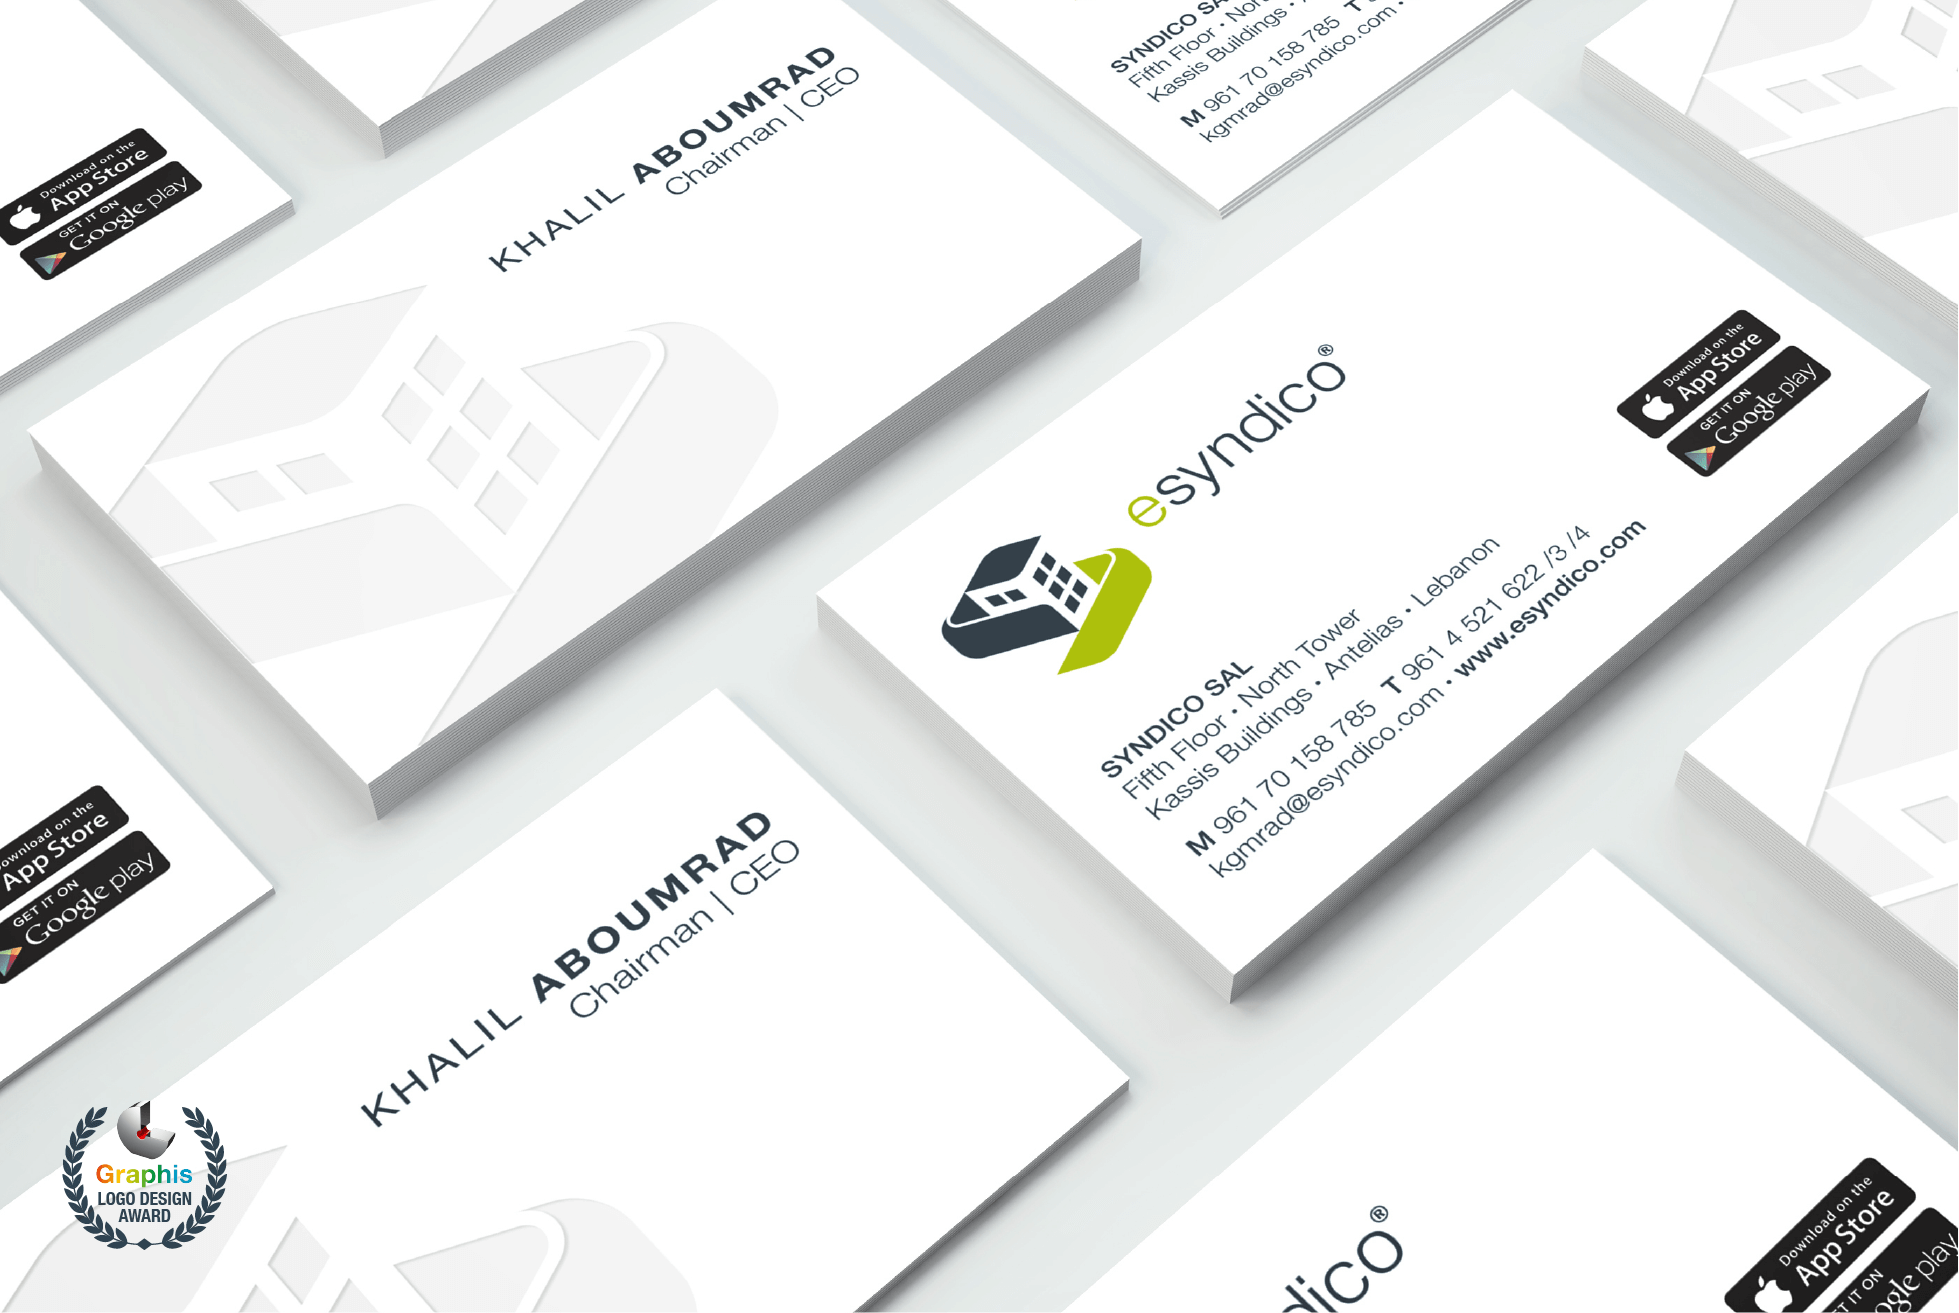 esyndico_business-card